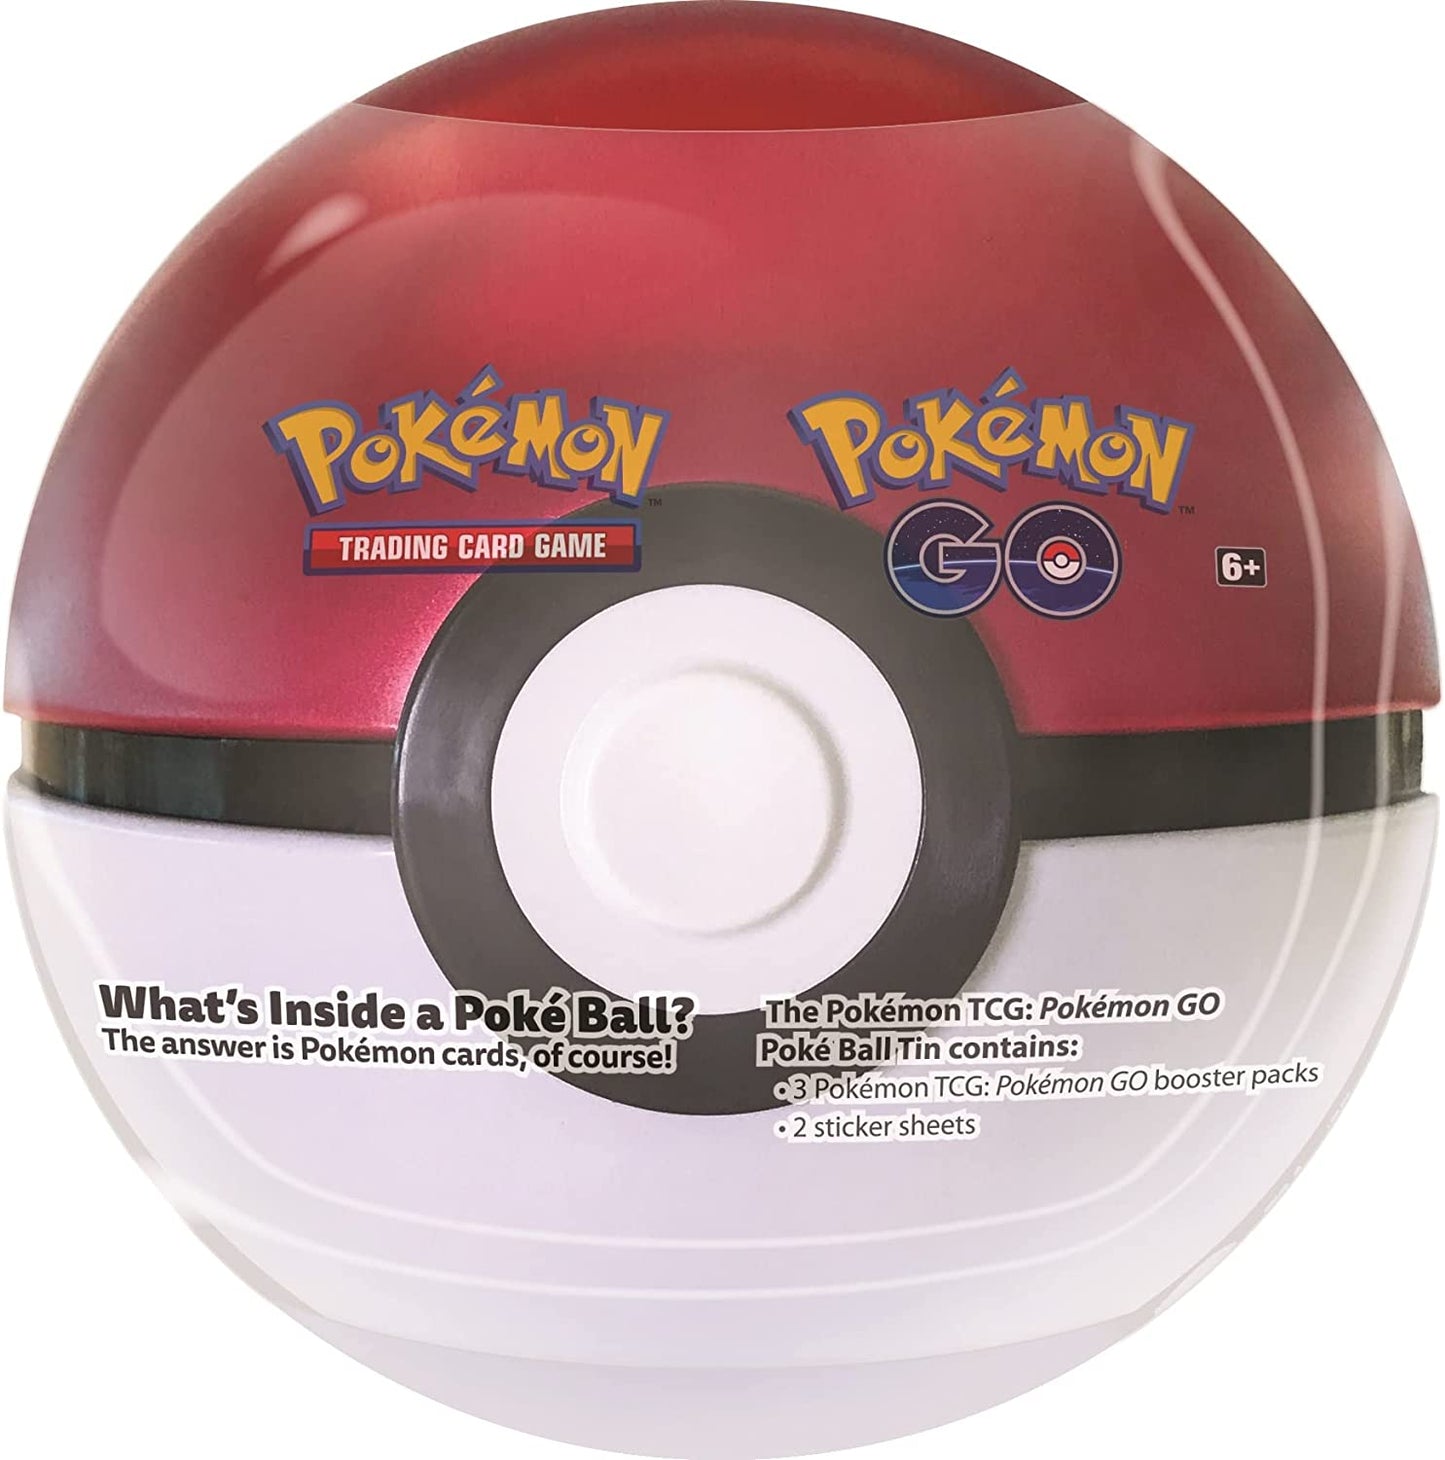 Pokemon - Pokemon GO Poké Ball Tins